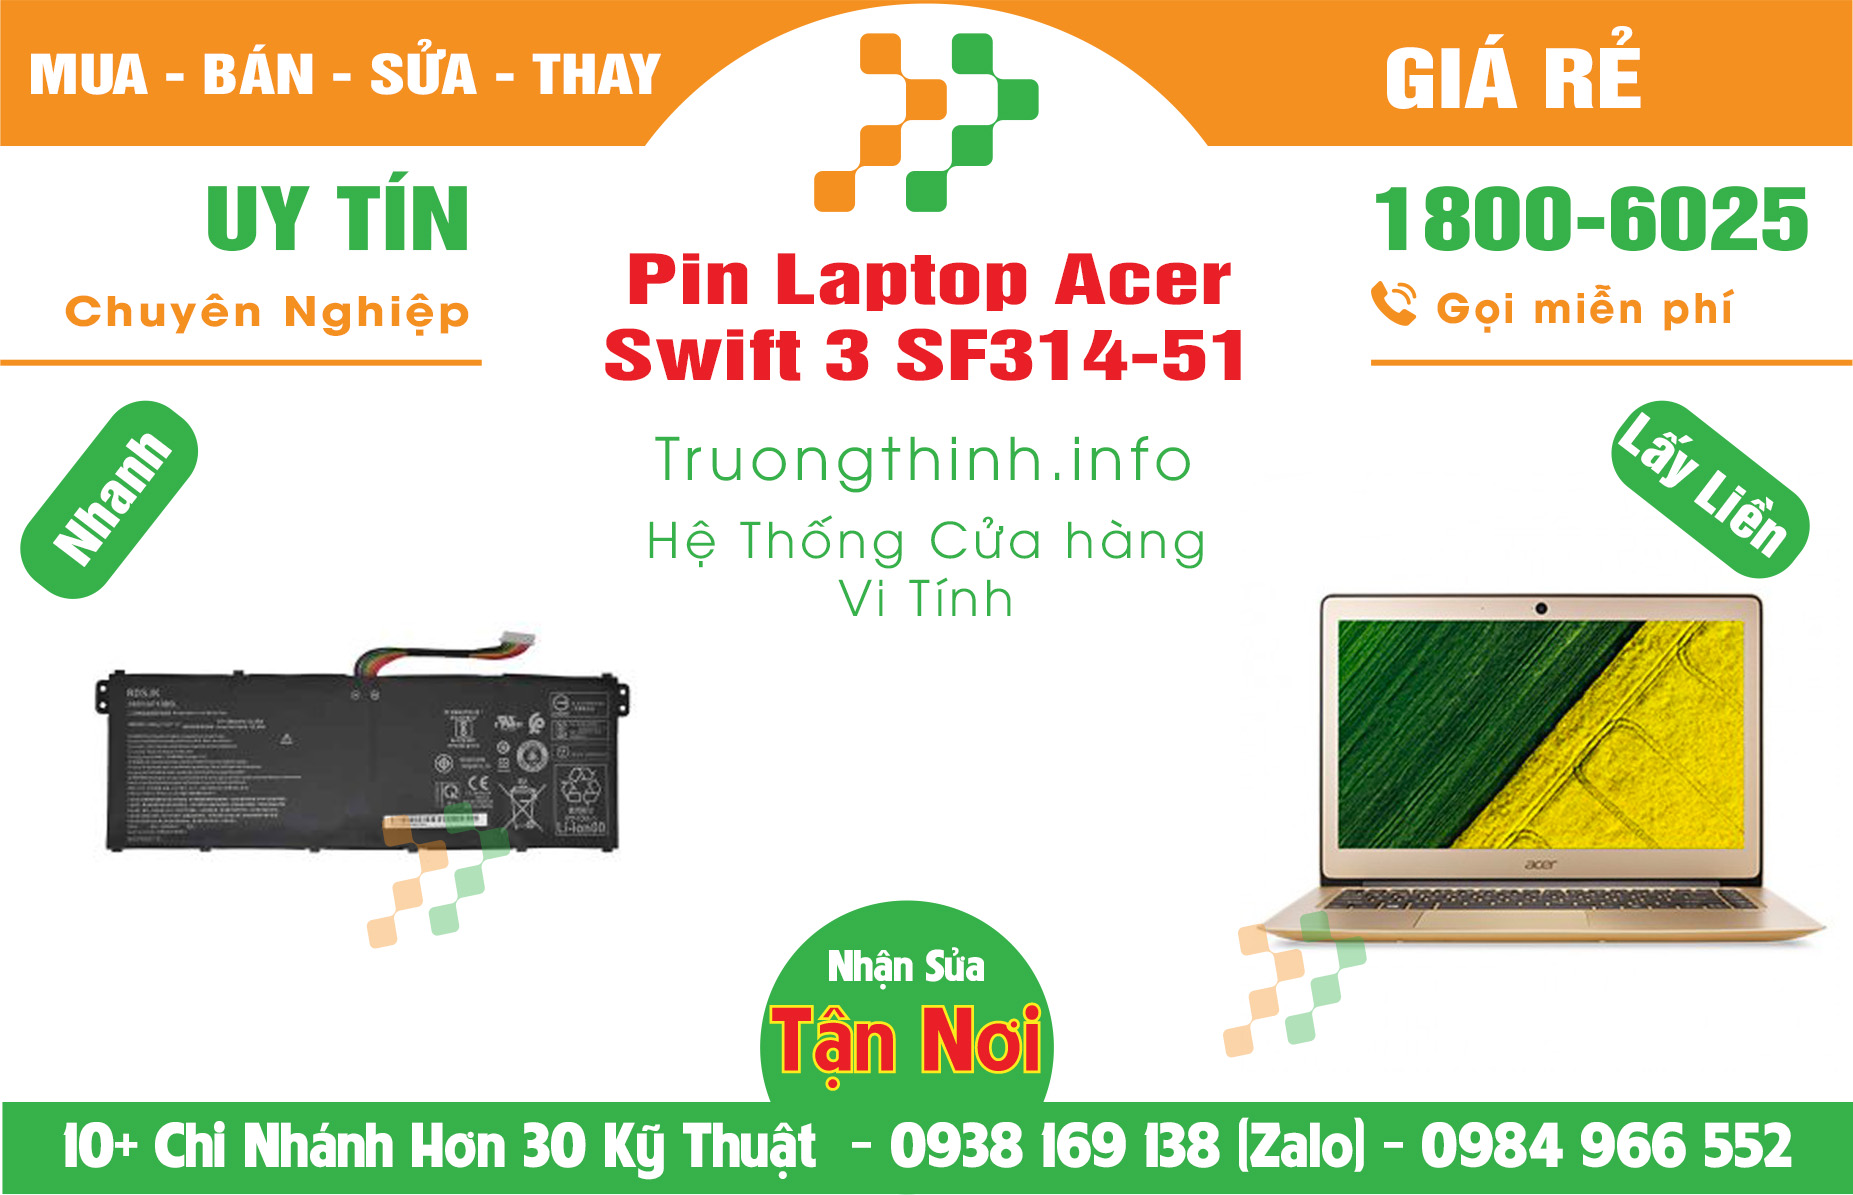 Mua Bán Pin Acer Swift 3 SF314-51 Giá Rẻ | Máy Tính Trường Thịnh Giá Rẻ